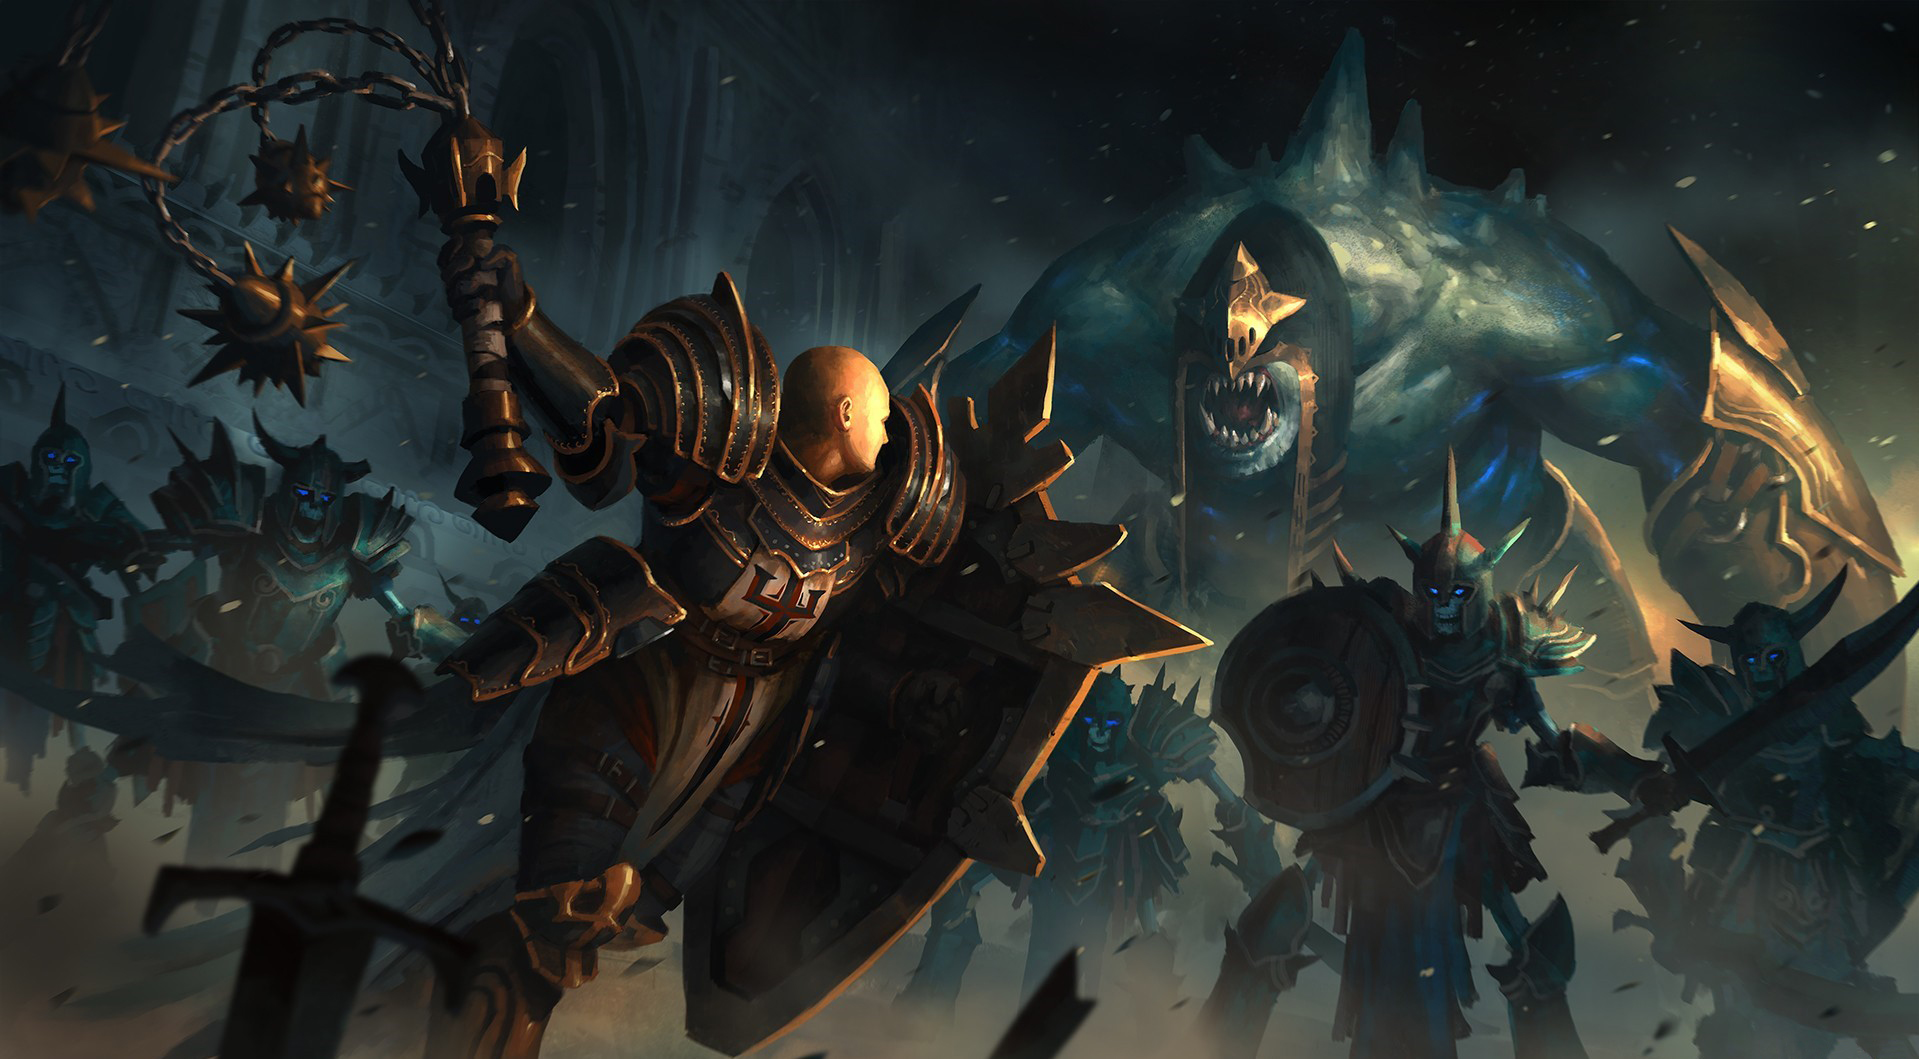 Diablo Iii Crusaders Artwork Skeleton Battle Video Games Fantasy Art 2012 Year Video Game Art Armore 1919x1059